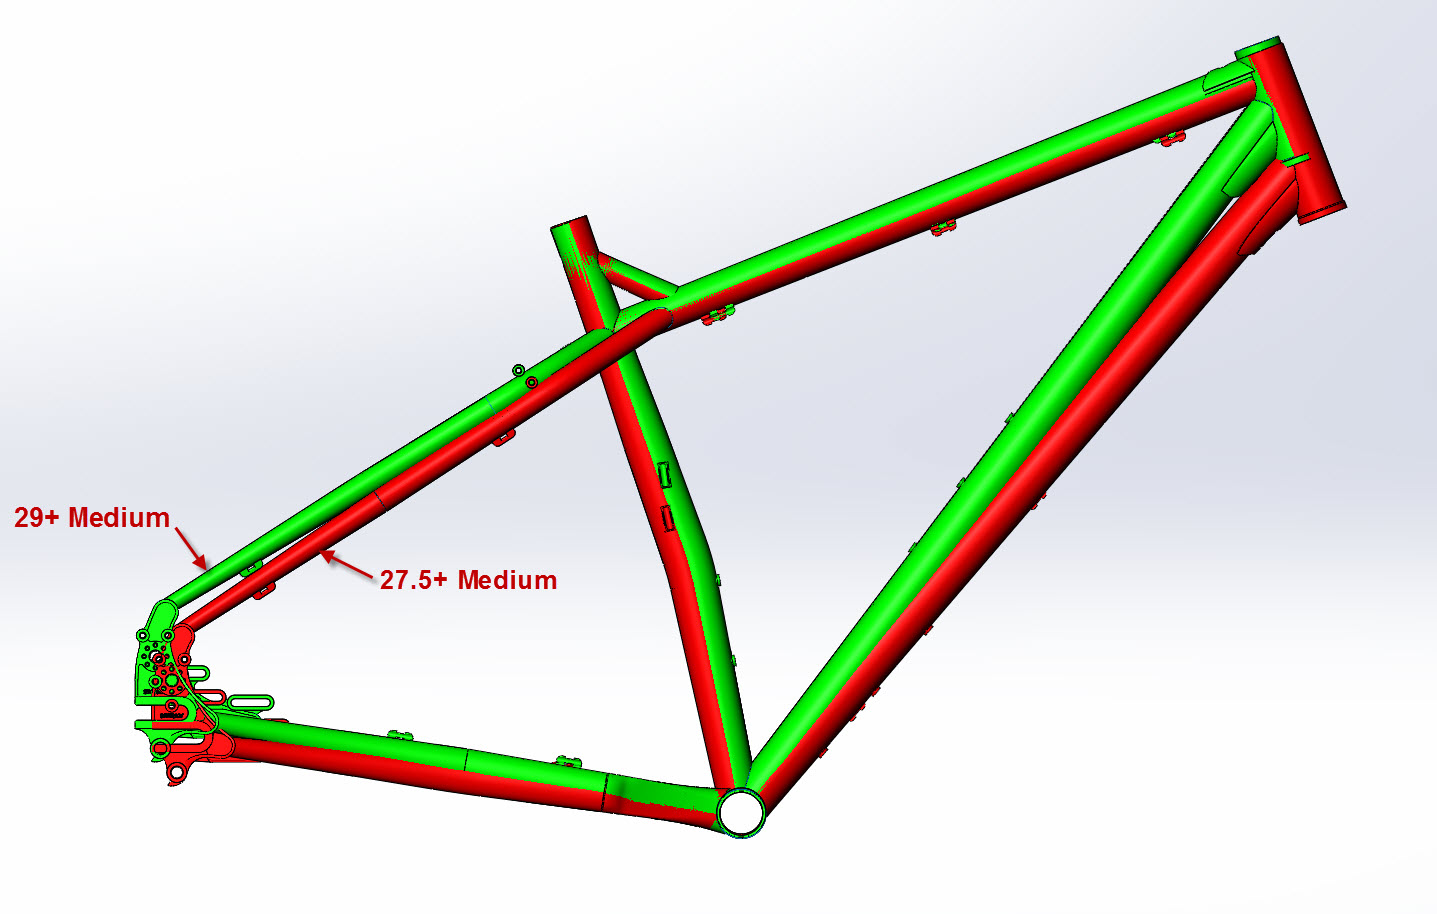 CAD Illustration of a Surly ECR bike frame